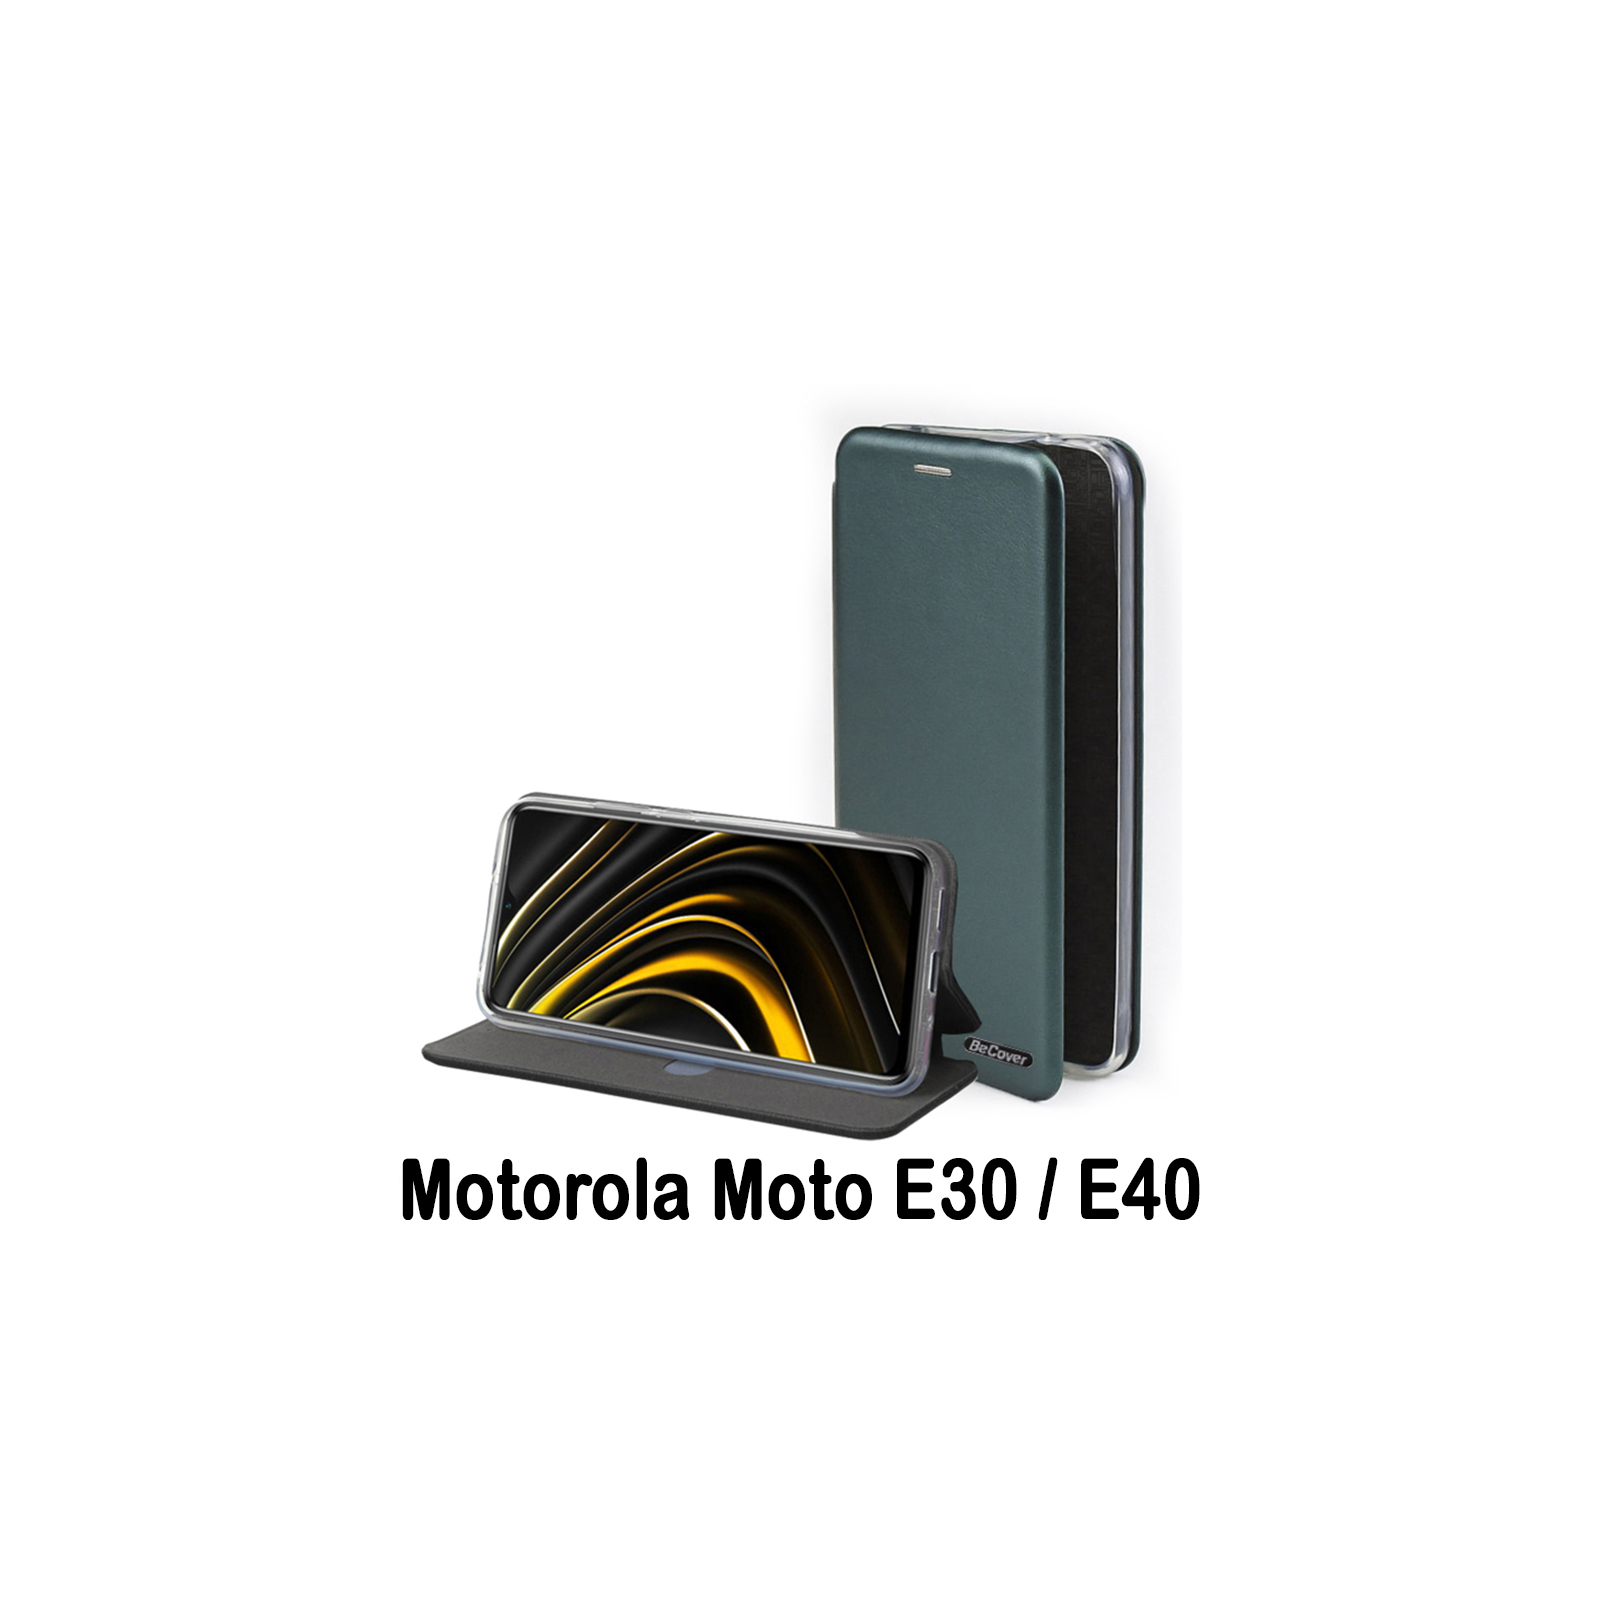 Чехол для мобильного телефона BeCover Exclusive Motorola Moto E30 / E40 Dark Green (707907)